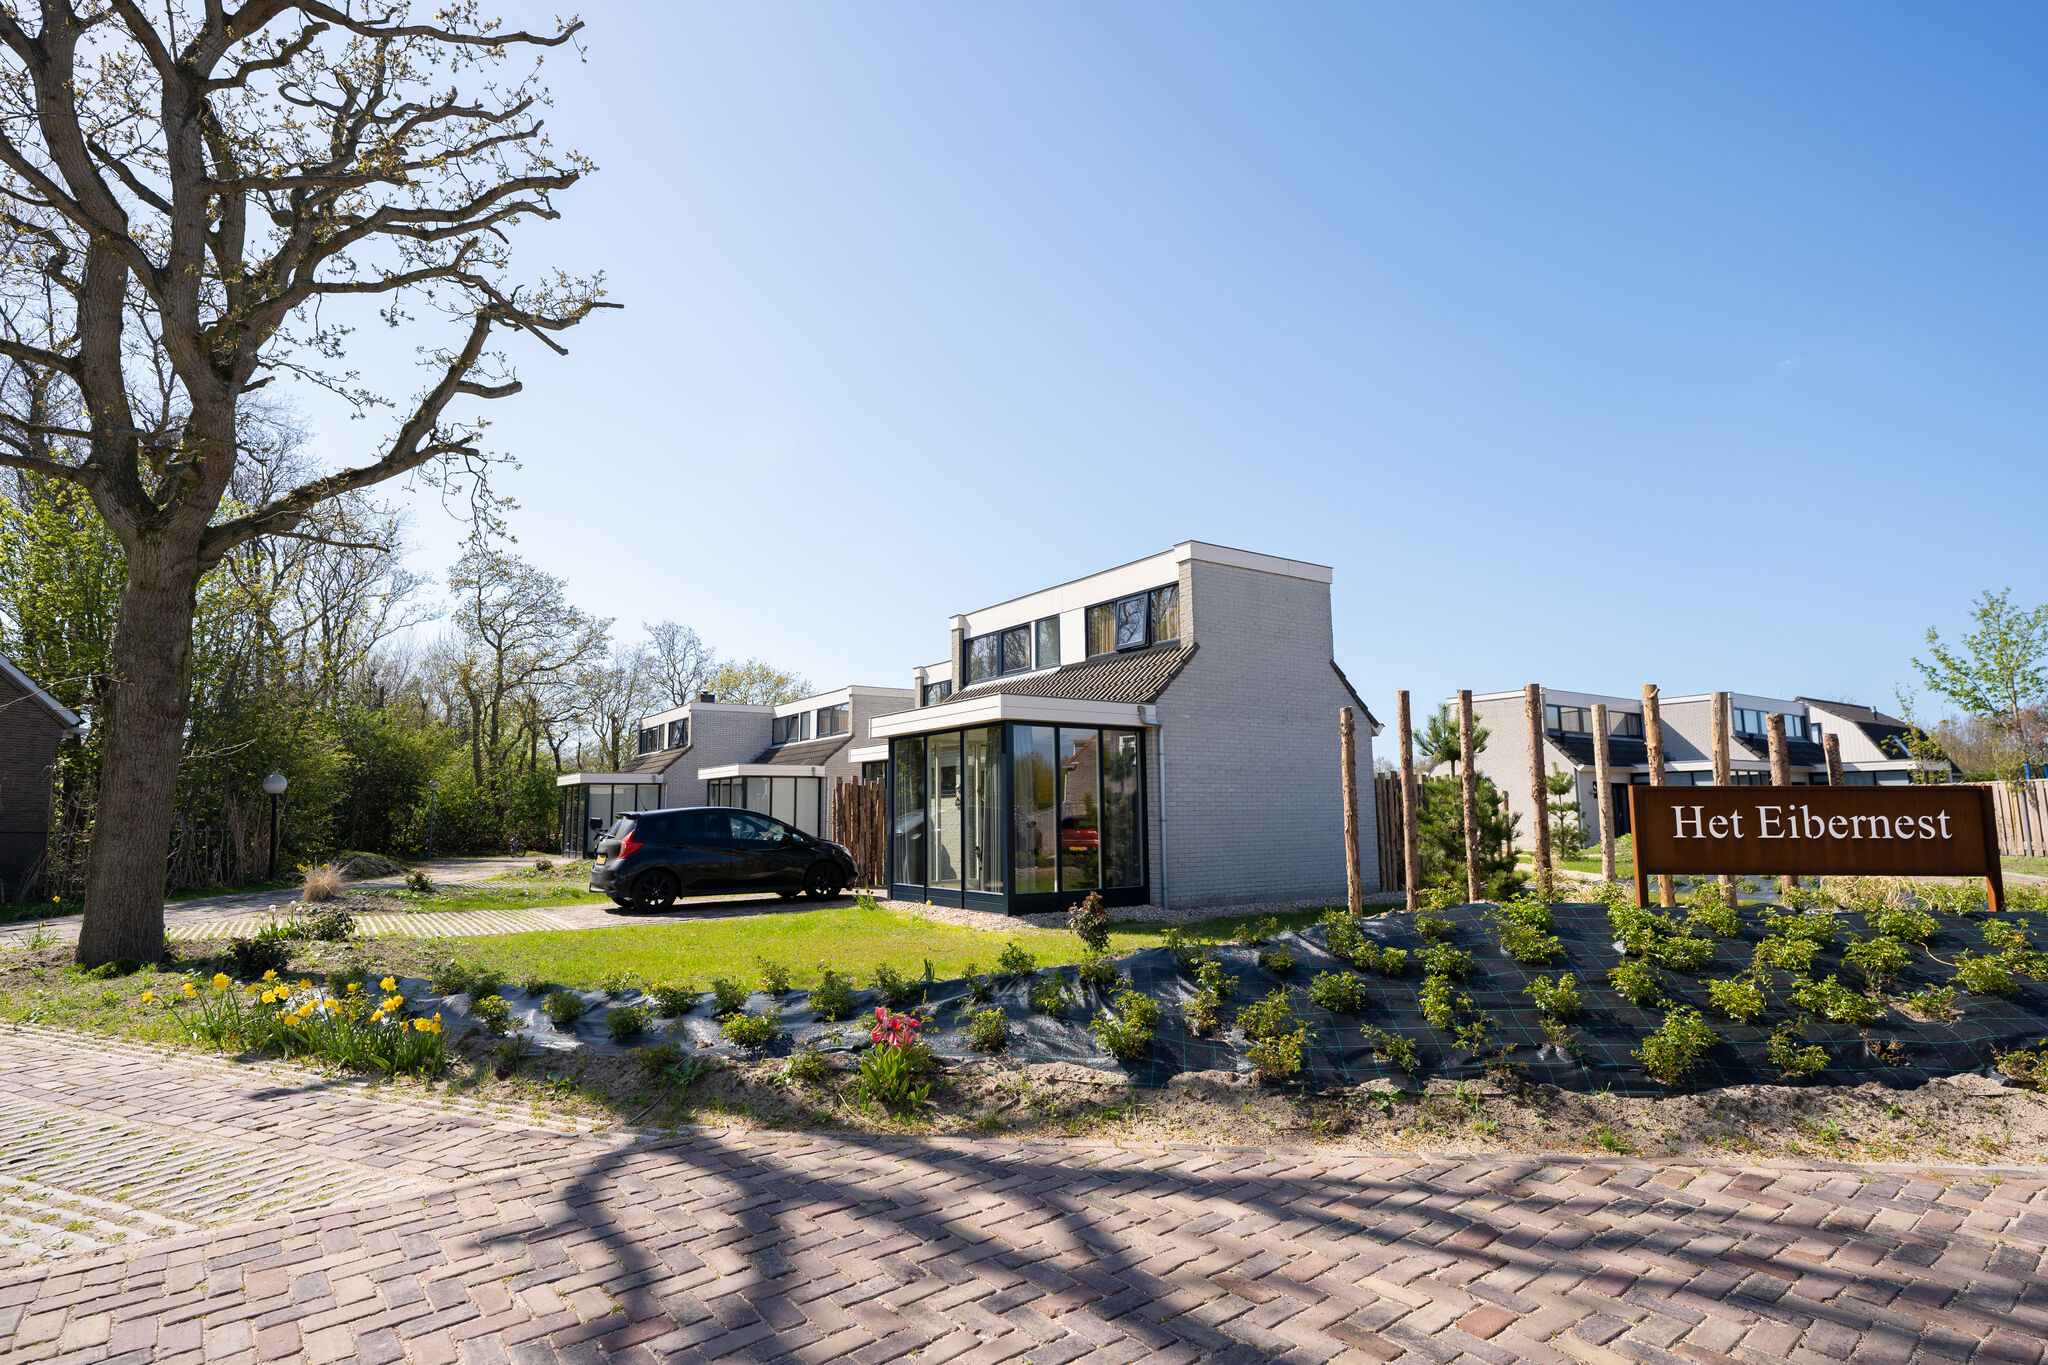 Maison de vacances chaleureuse avec Wi-Fi dans un parc de vacances situé à Texel